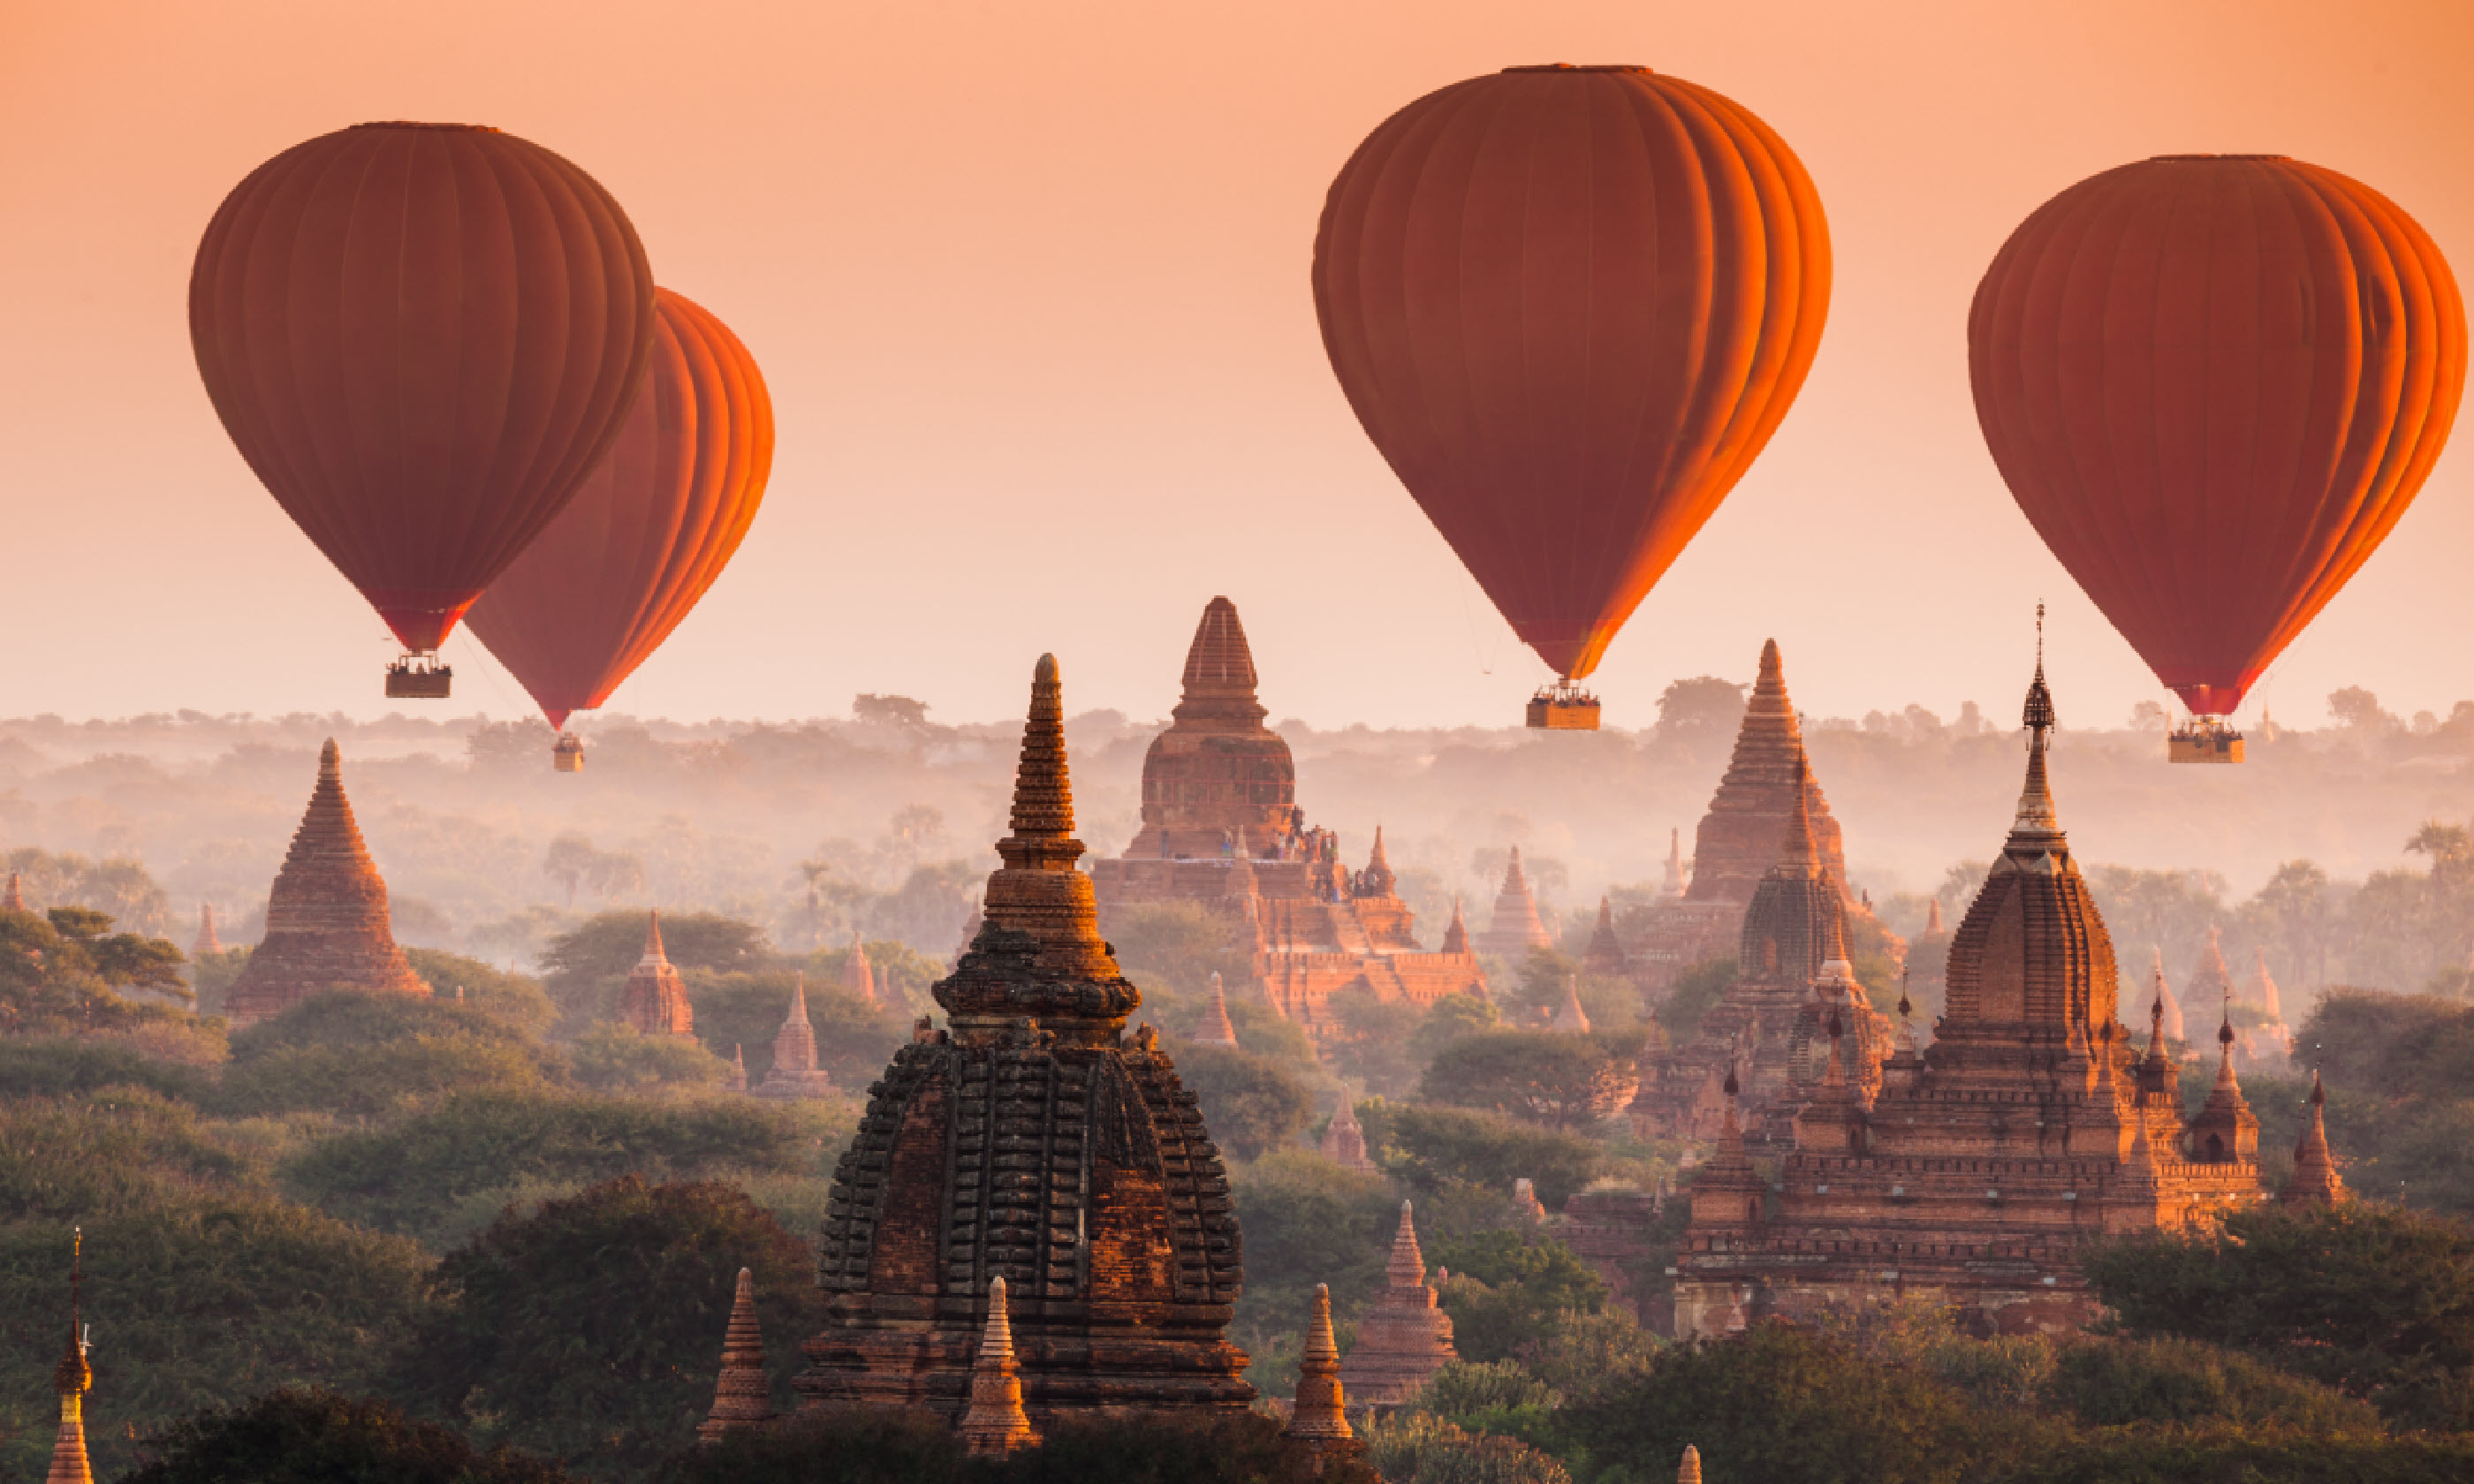 Hot air balloon over plain of Bagan (Shutterstock)